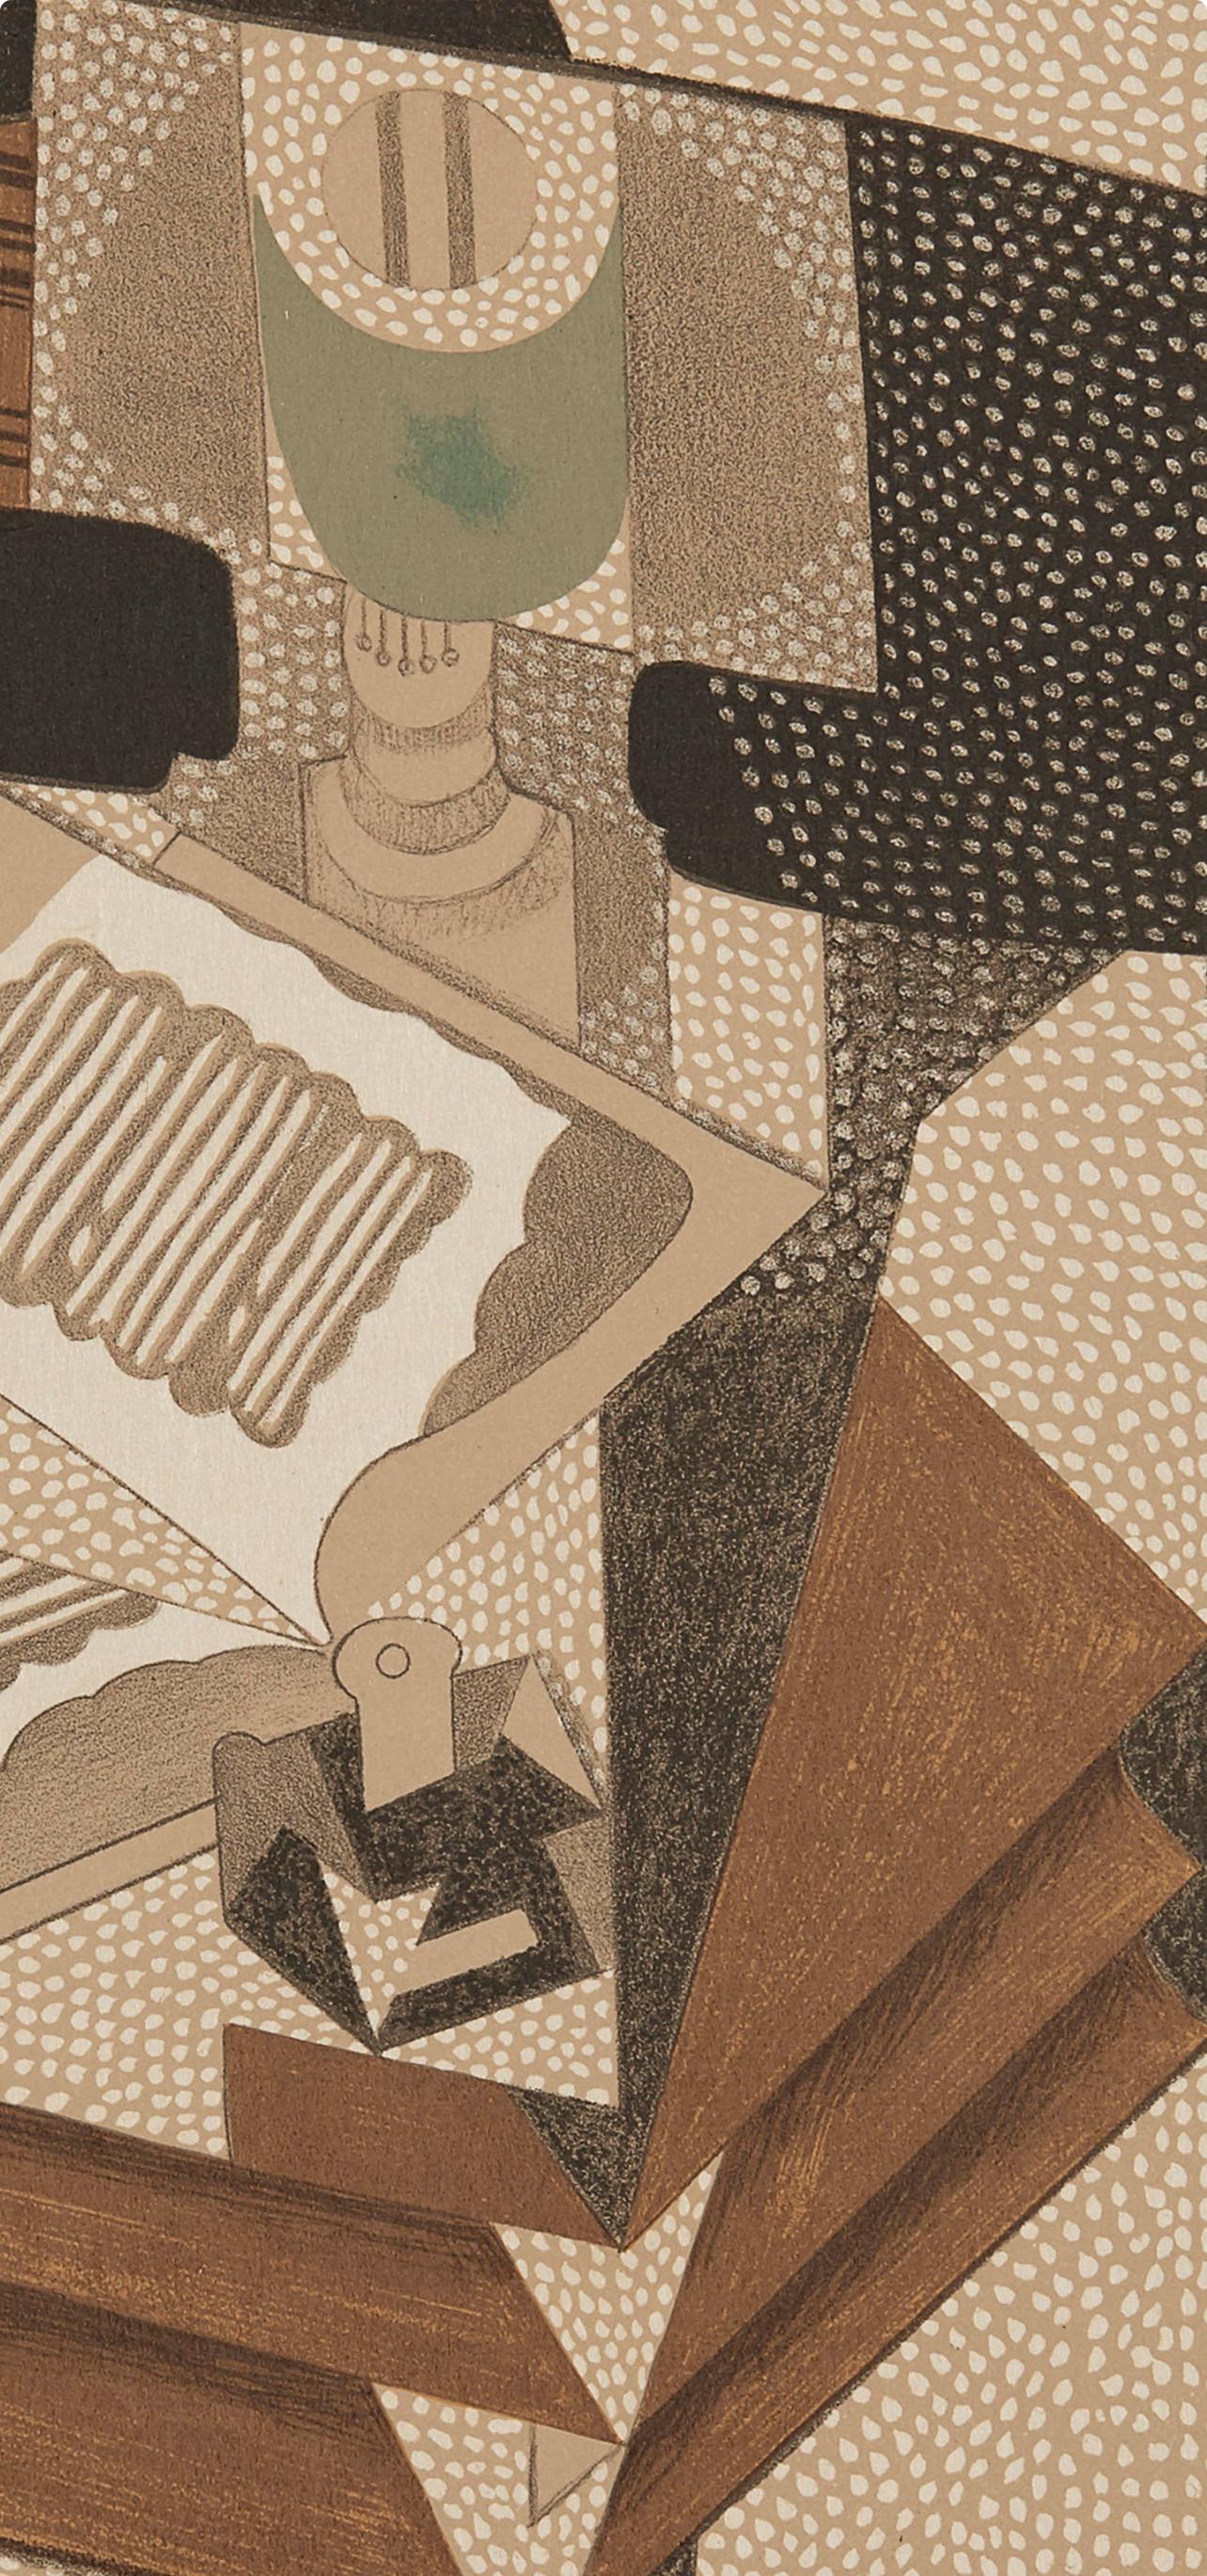 Gris, Le Livre (Kahnweiler 1969), Au Soleil du Plafond (après) - Print de Juan Gris